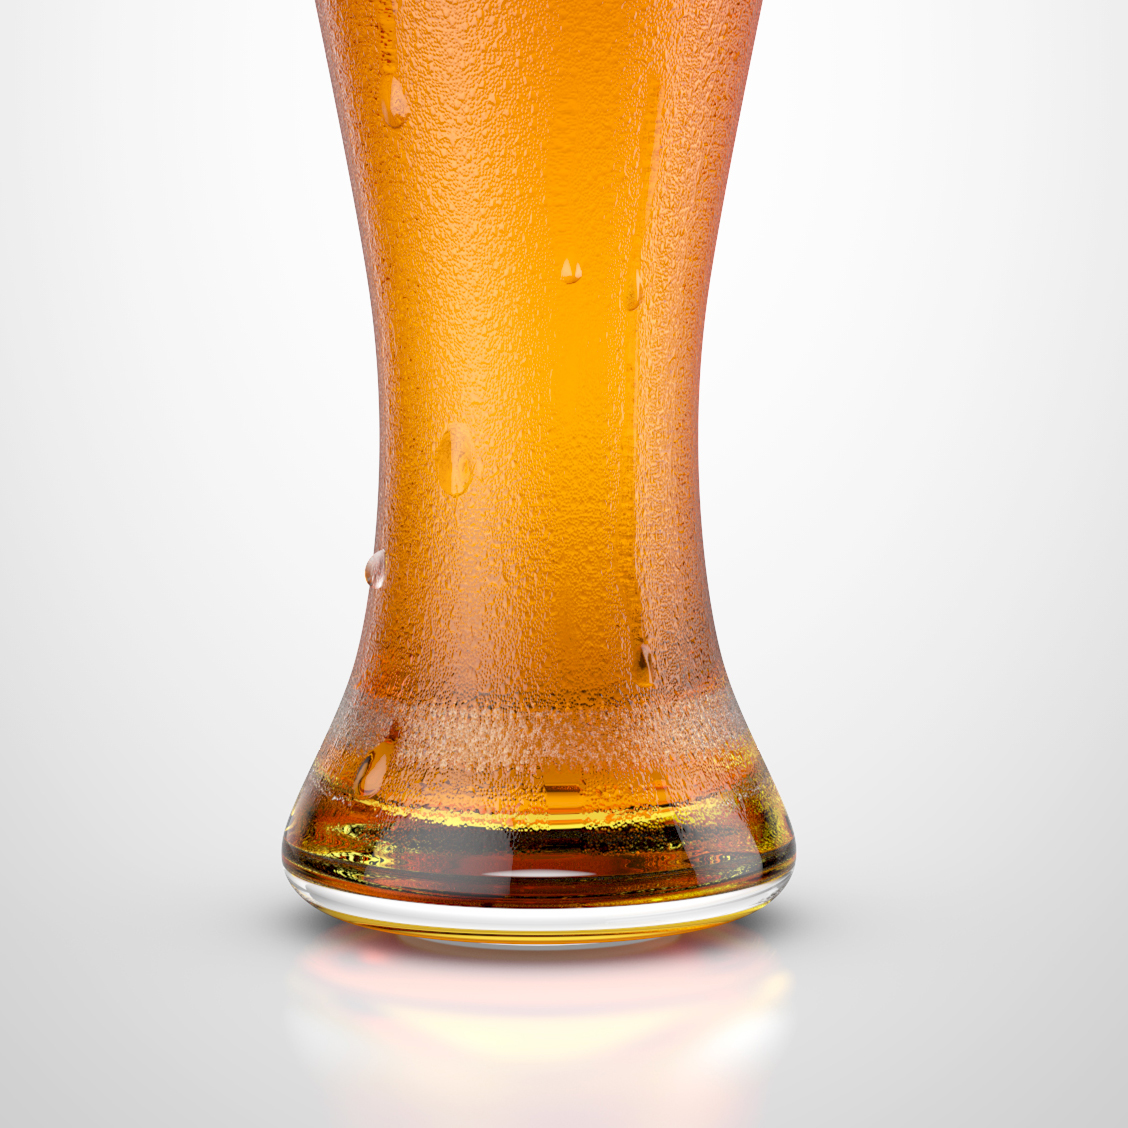 beer glass 3D tutorial cinema 4d photoshop